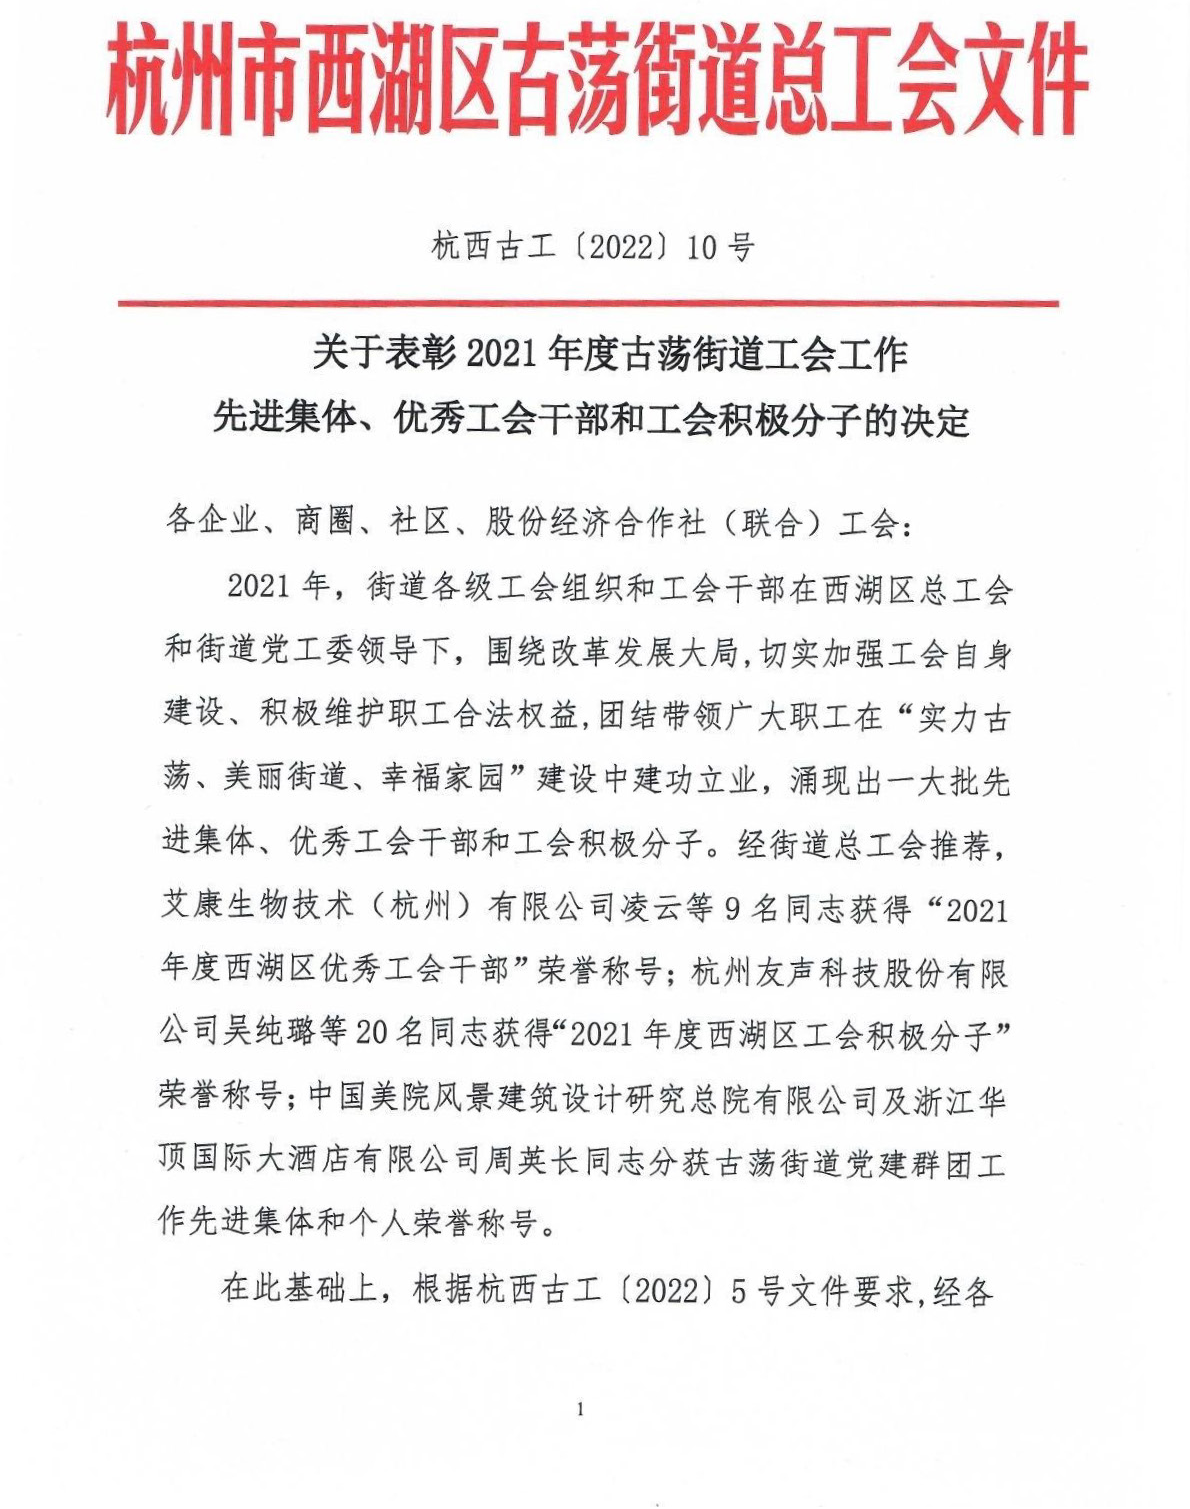 祝贺吴纯璐同志荣获“2021年度西湖区工会积极分子”称号